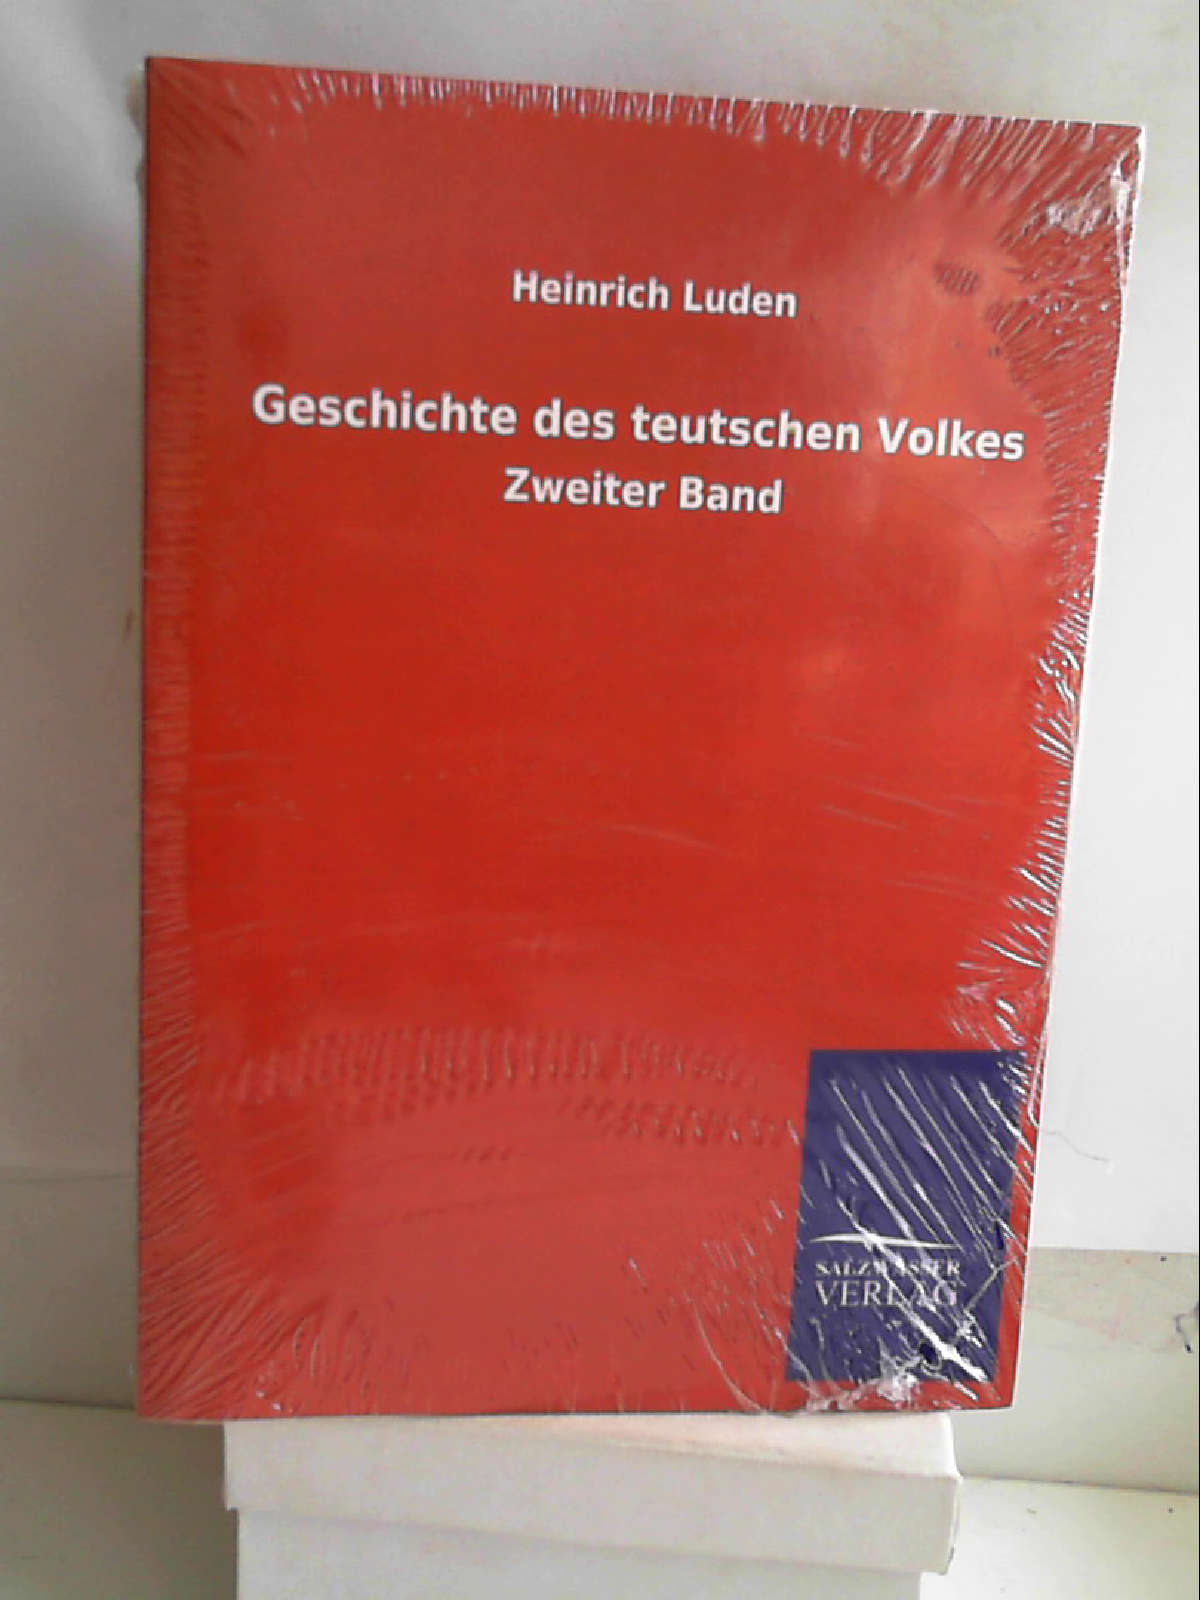 Geschichte des teutschen Volkes: Zweiter Band [Paperback] [May 12, 2013] Luden, Heinrich - Heinrich Luden